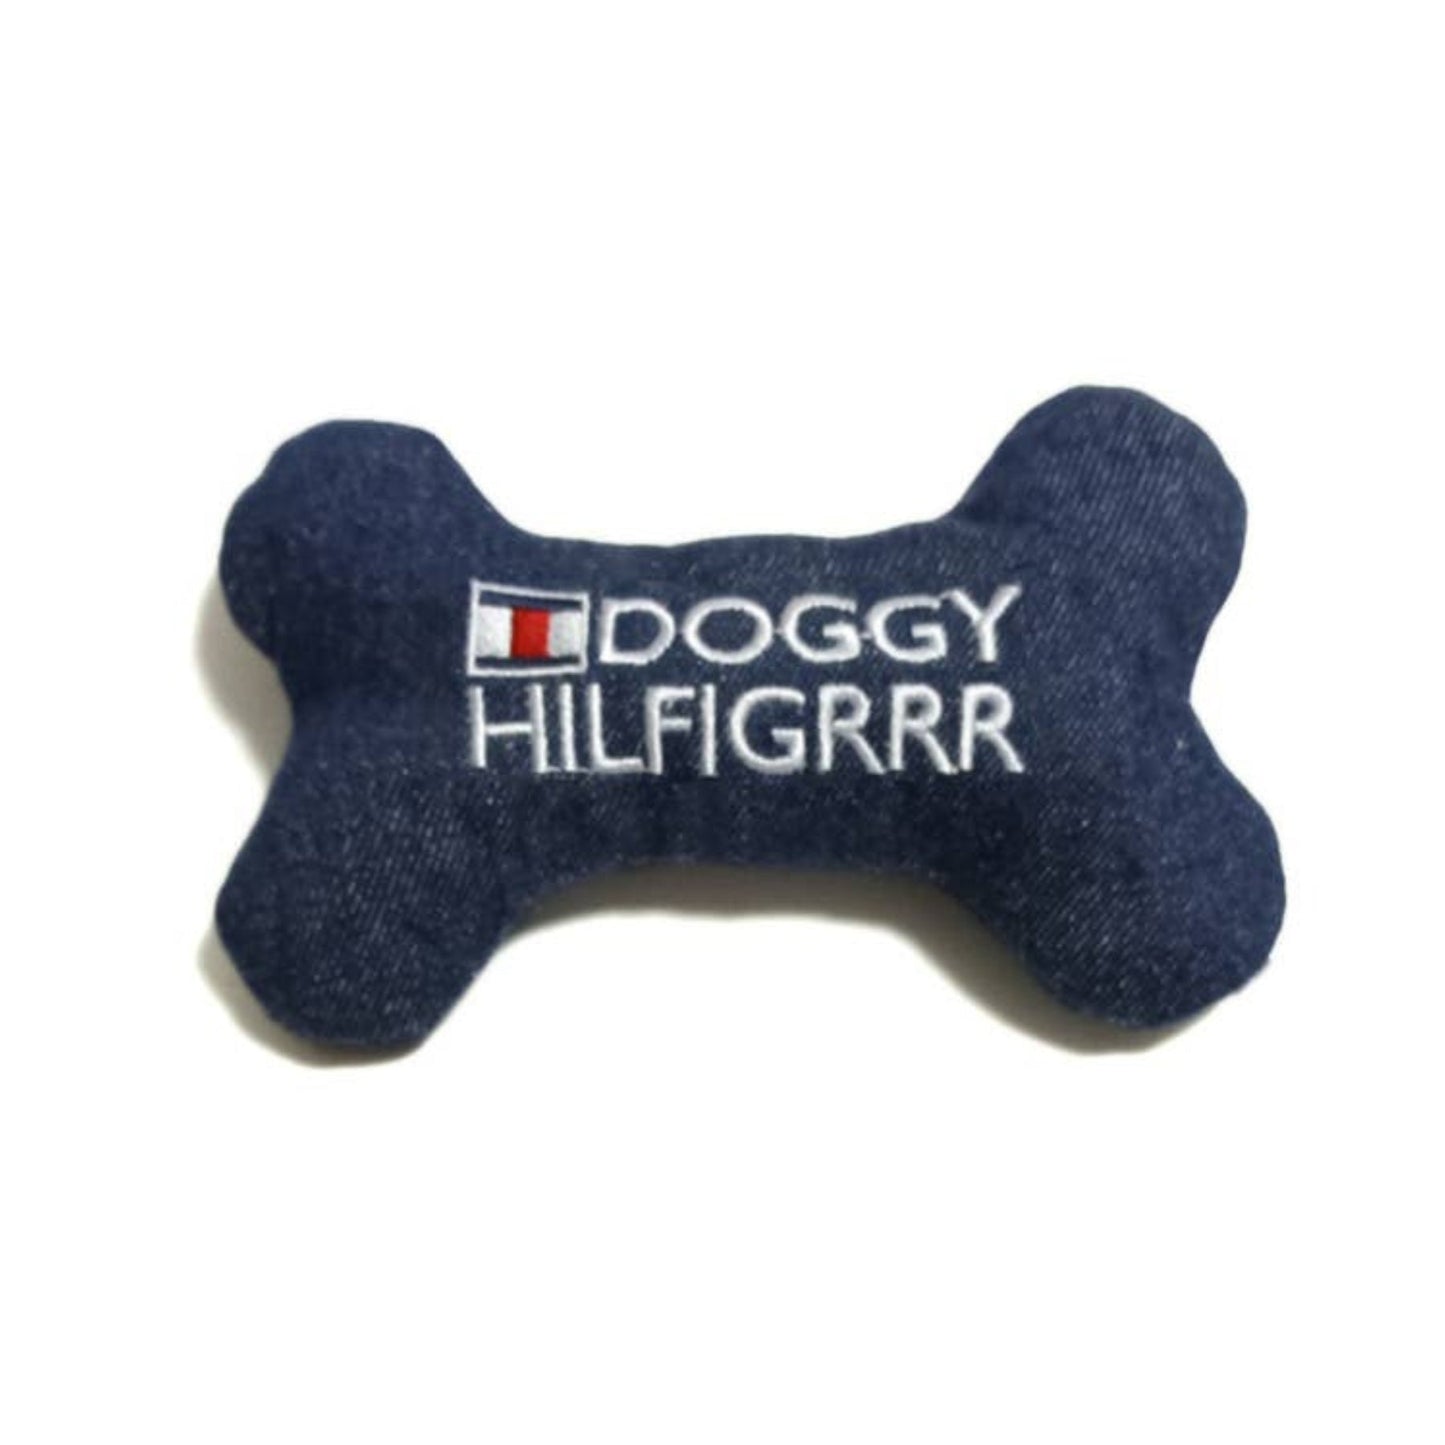 CatwalkDog Doggy Hilfigrrr Bone Toy - Pooch Luxury